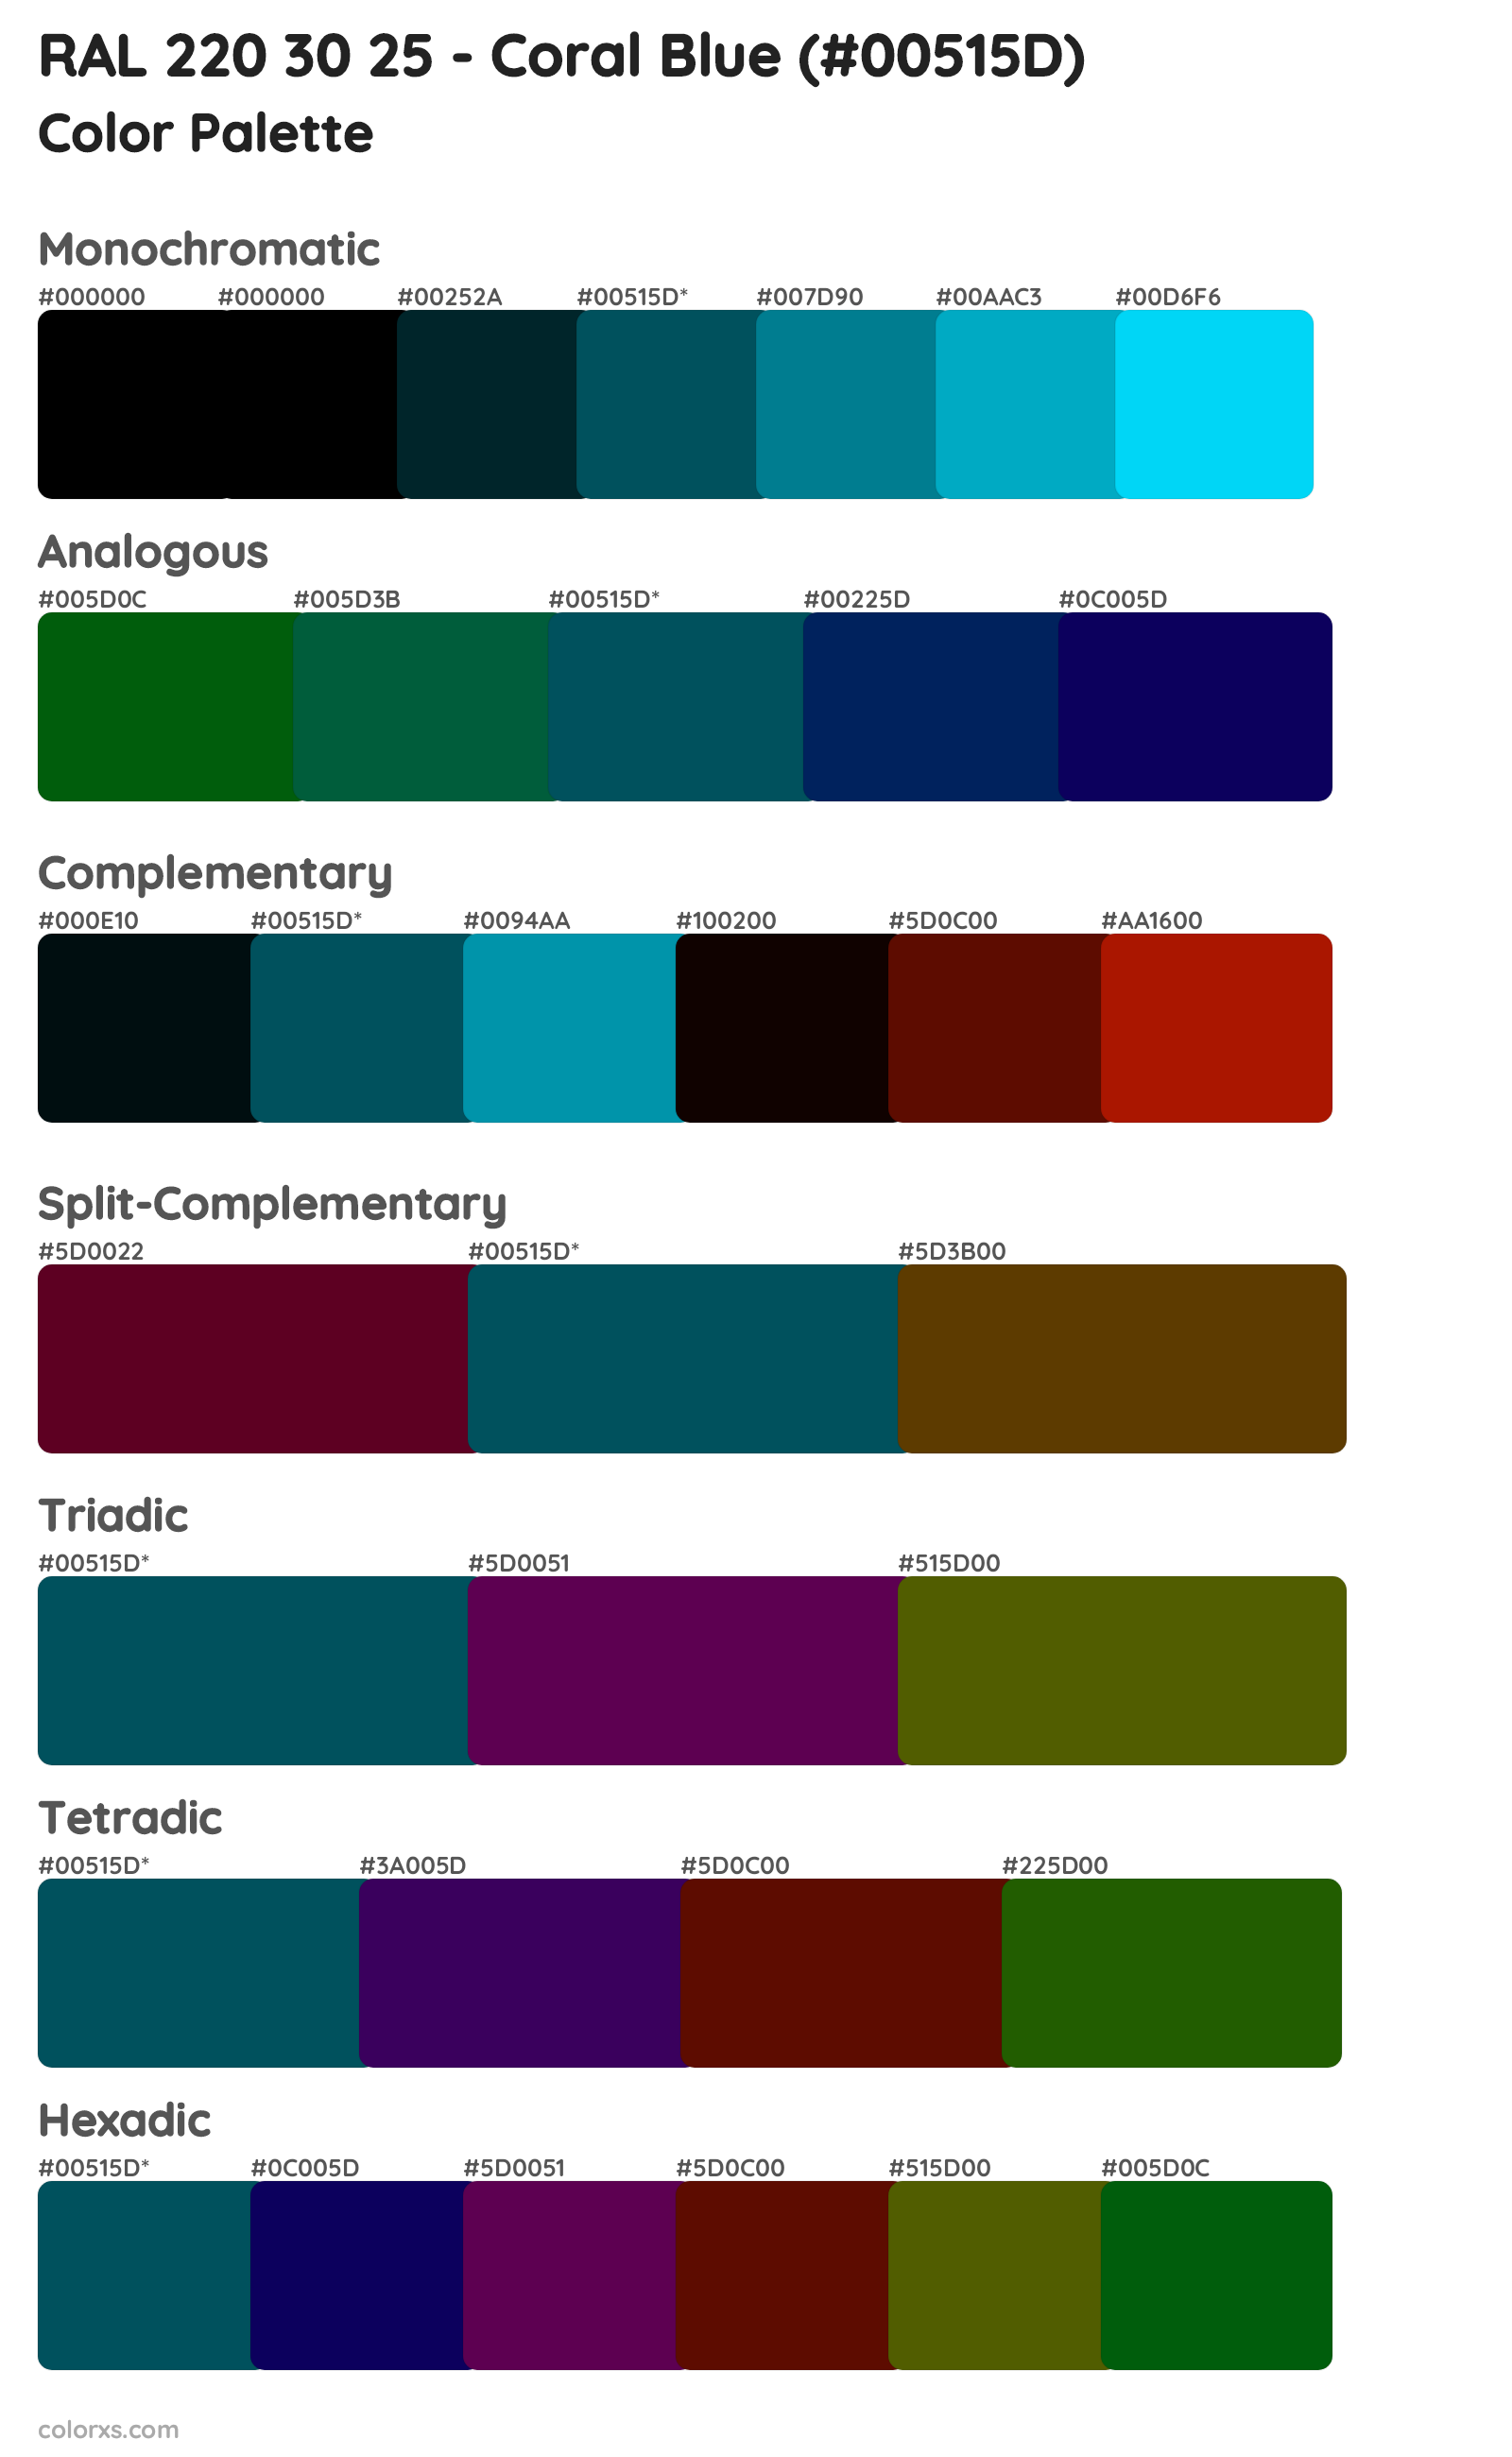 RAL 220 30 25 - Coral Blue Color Scheme Palettes